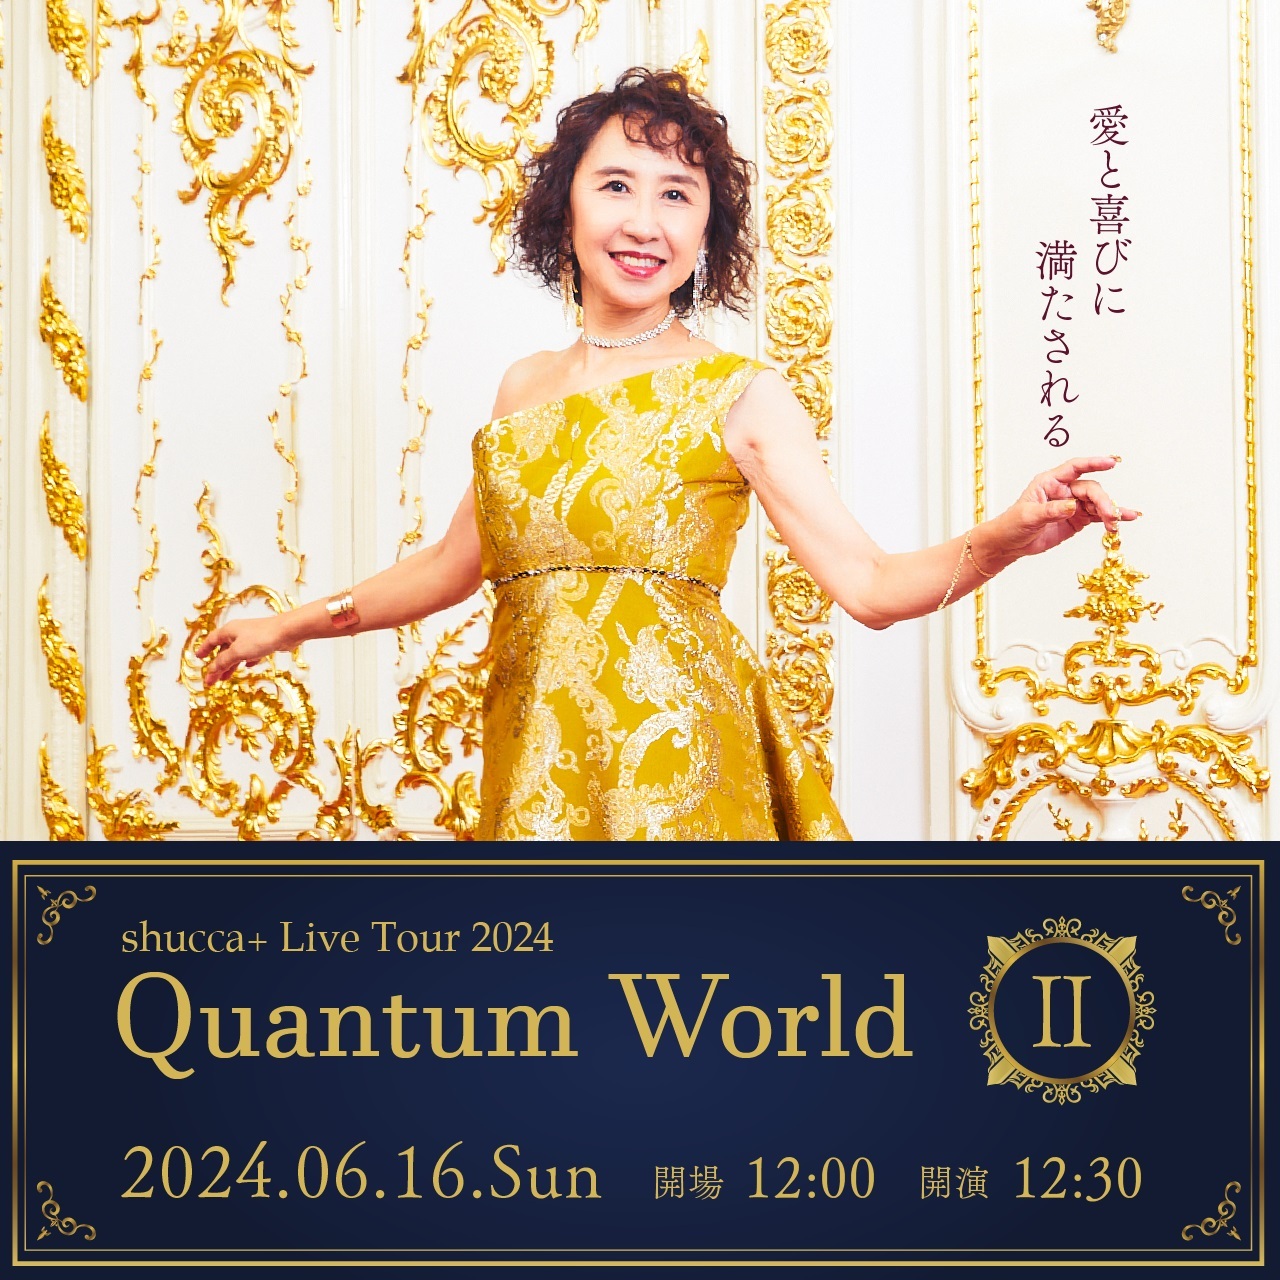 【現地観覧チケット】shucca+ Live Tour 2024 「Quantum World Ⅱ」